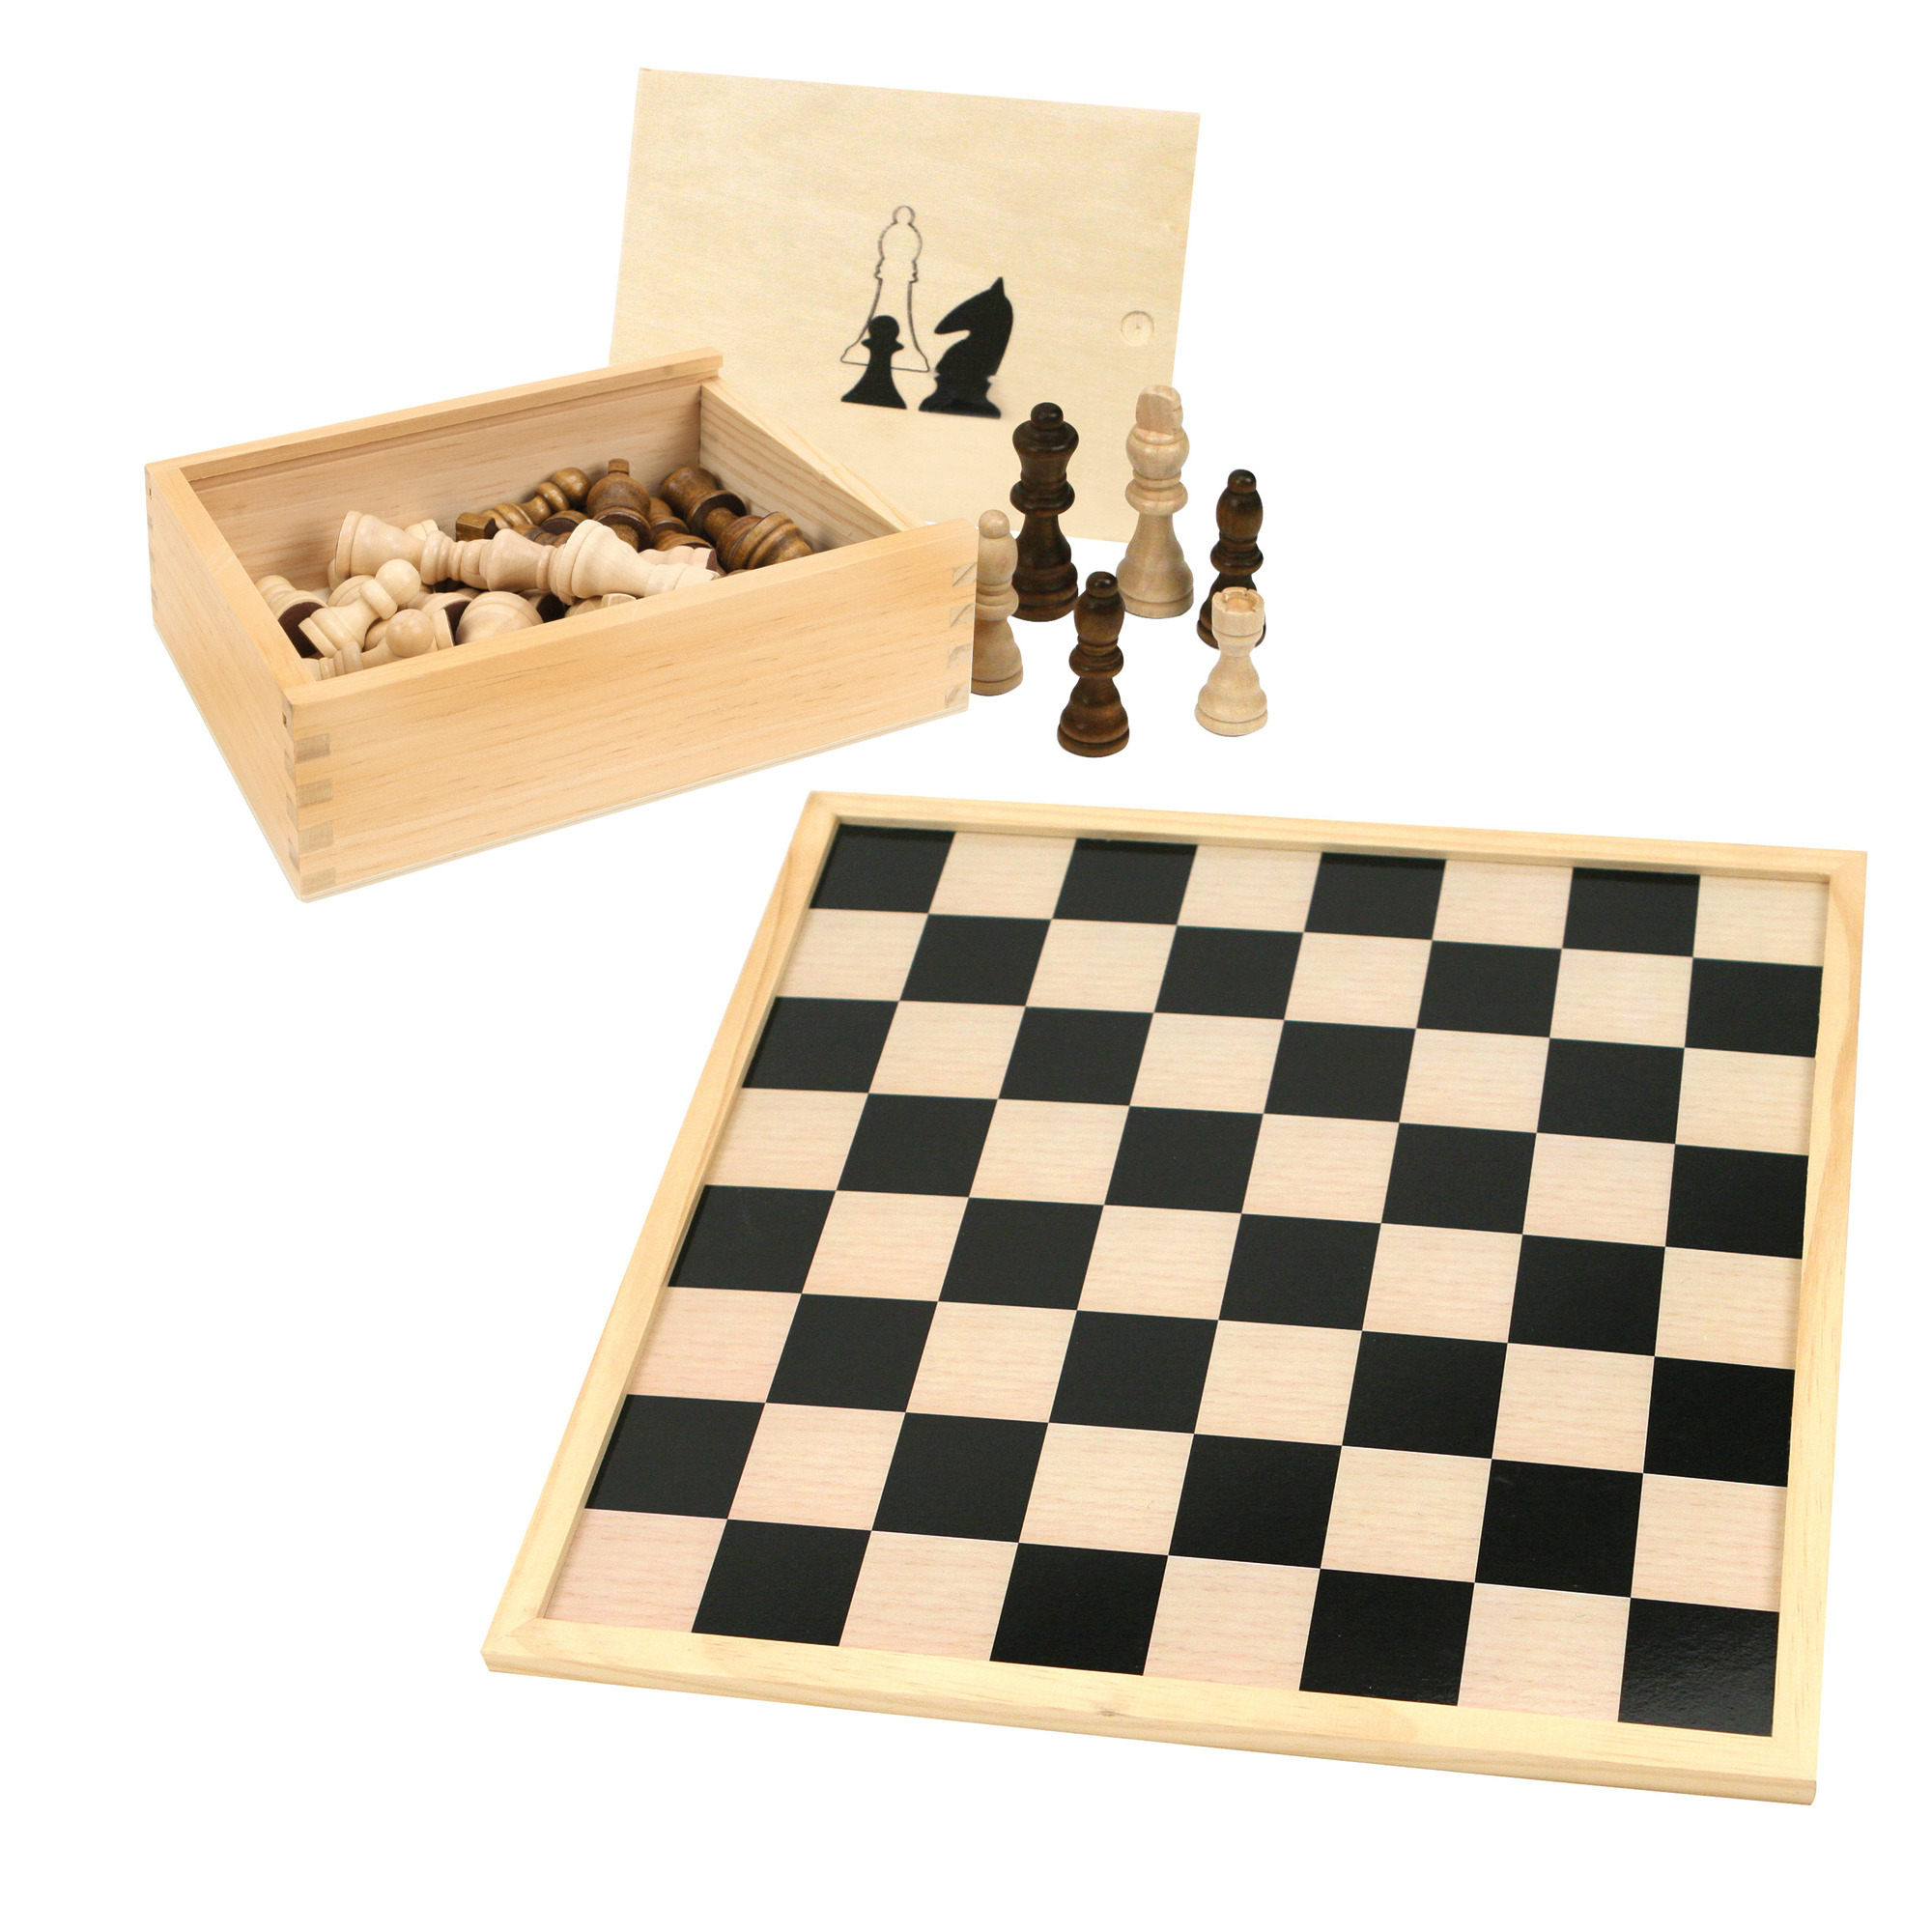 Schaakbord-dambord van hout 40 x 40 cm met schaakstukken in opbergkistje